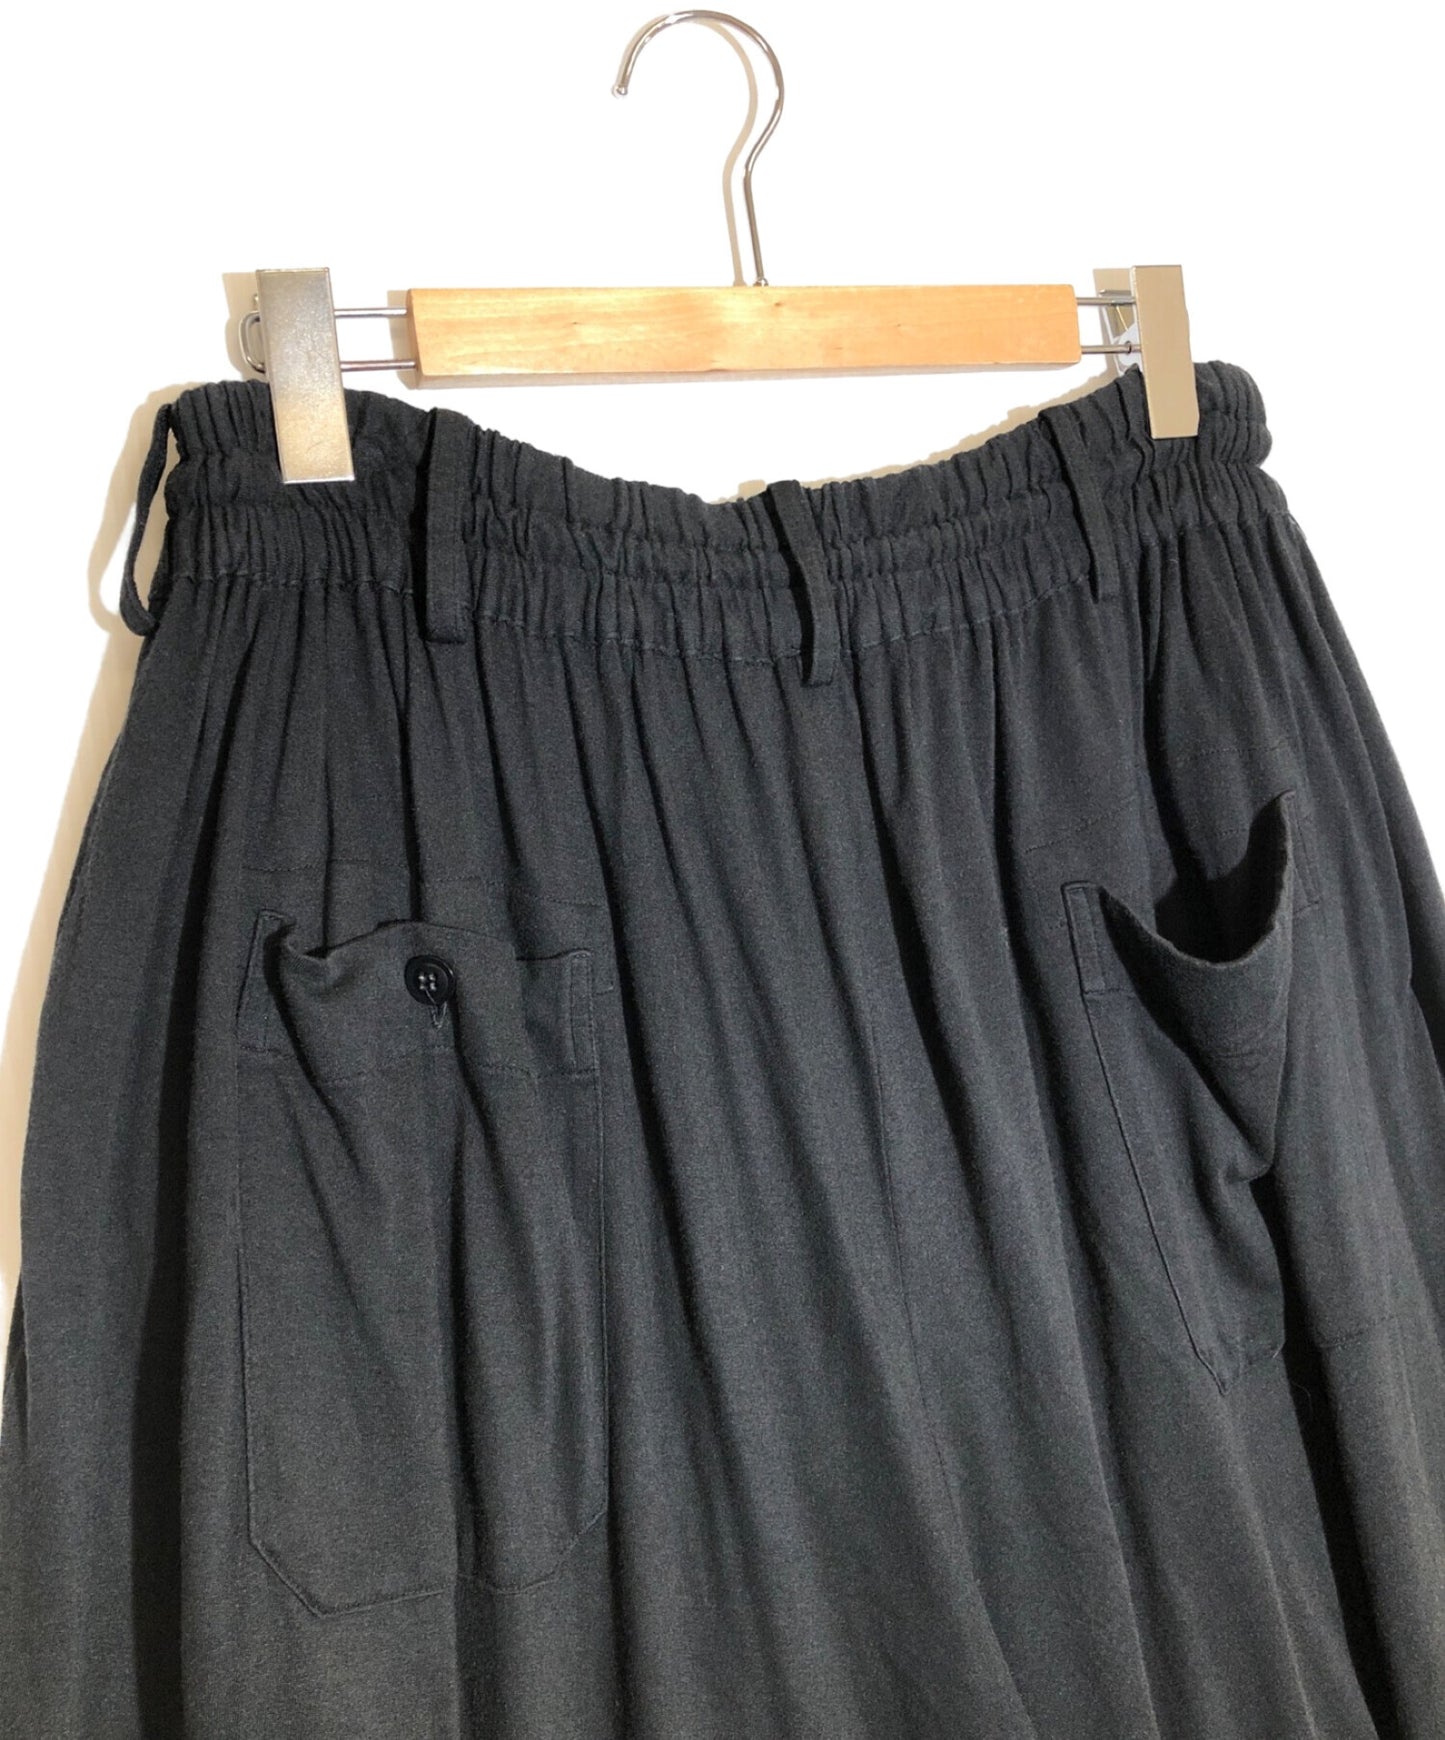 S'yte Yohji Yamamoto Cotton Rayon球衣Culotte裤子U0-P23-208